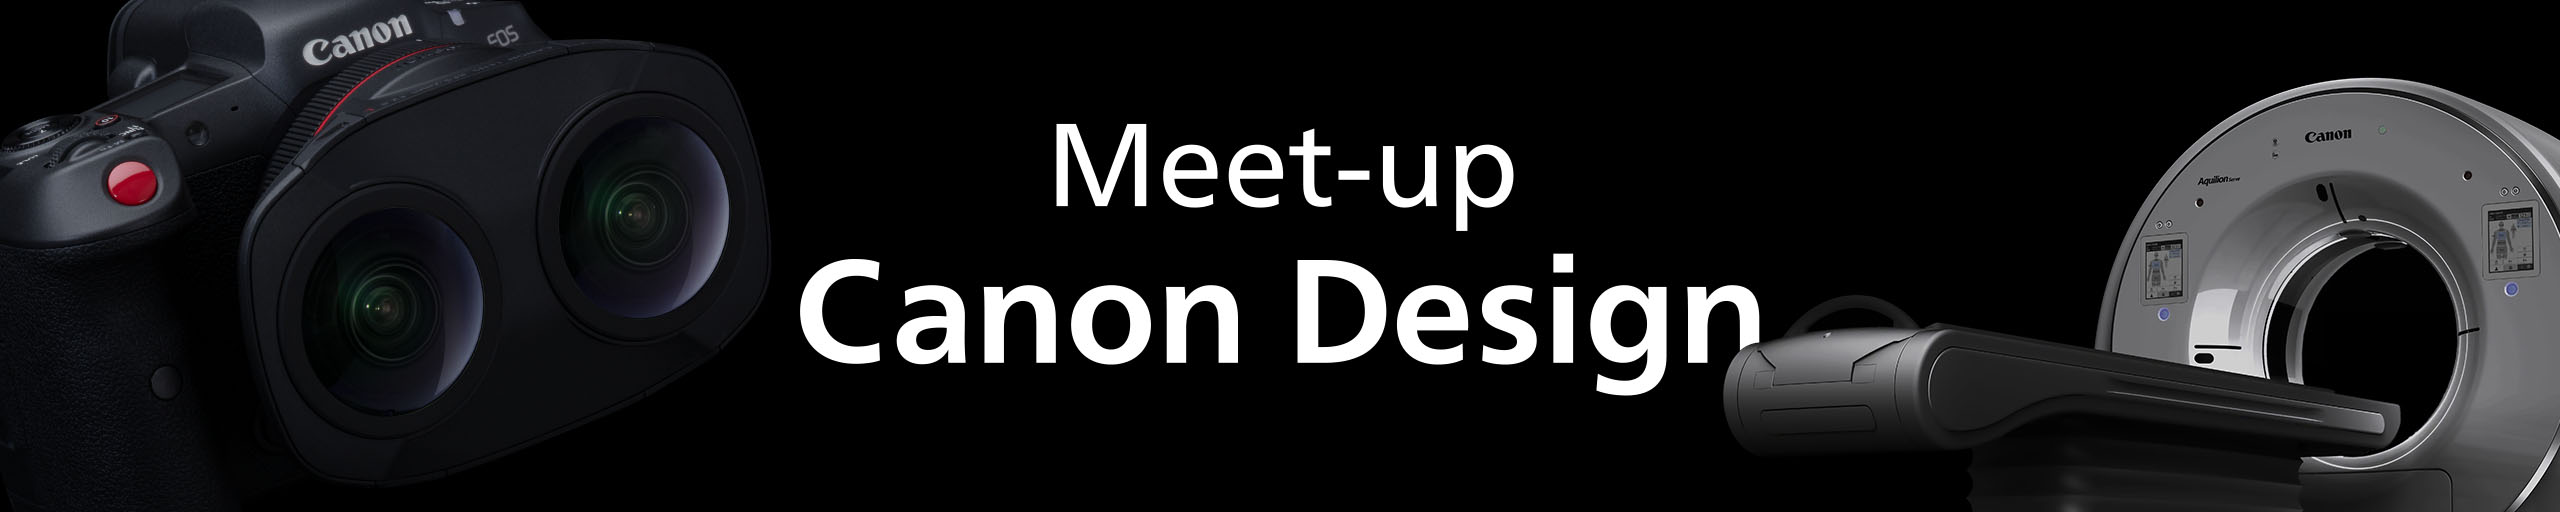 Meet-up Canon Design